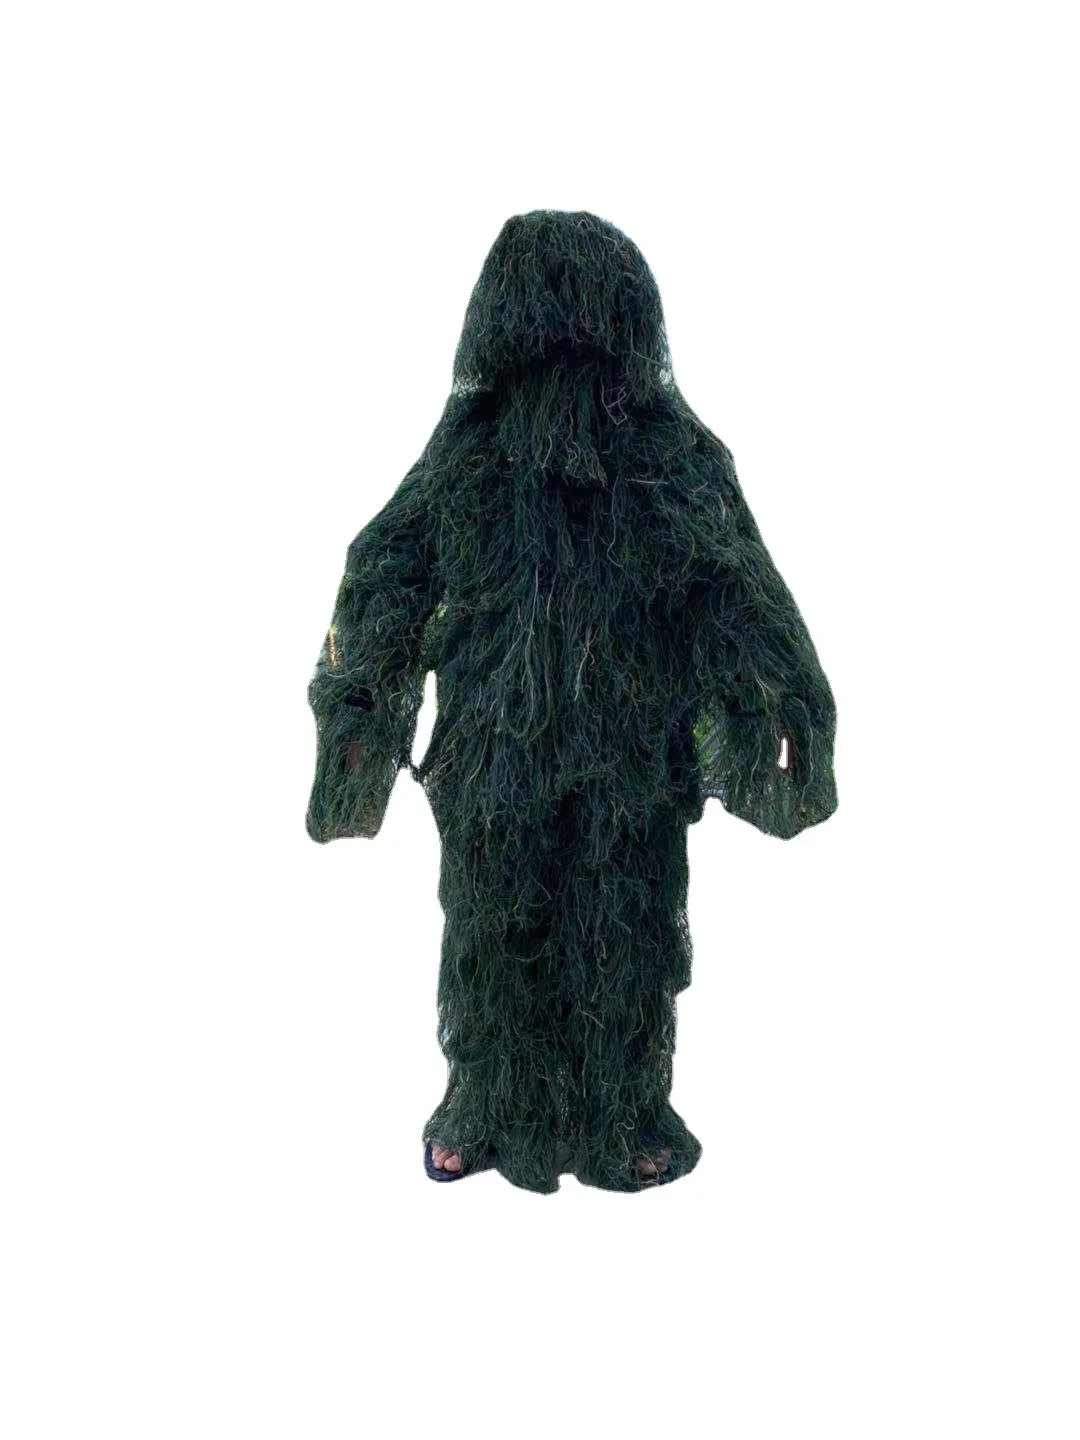 Камуфляжный костюм джунглей, маскировочный костюм с кисточками, скрытая одежда, костюм для выступлений, реквизит для косплея, форма для выступлений - 2